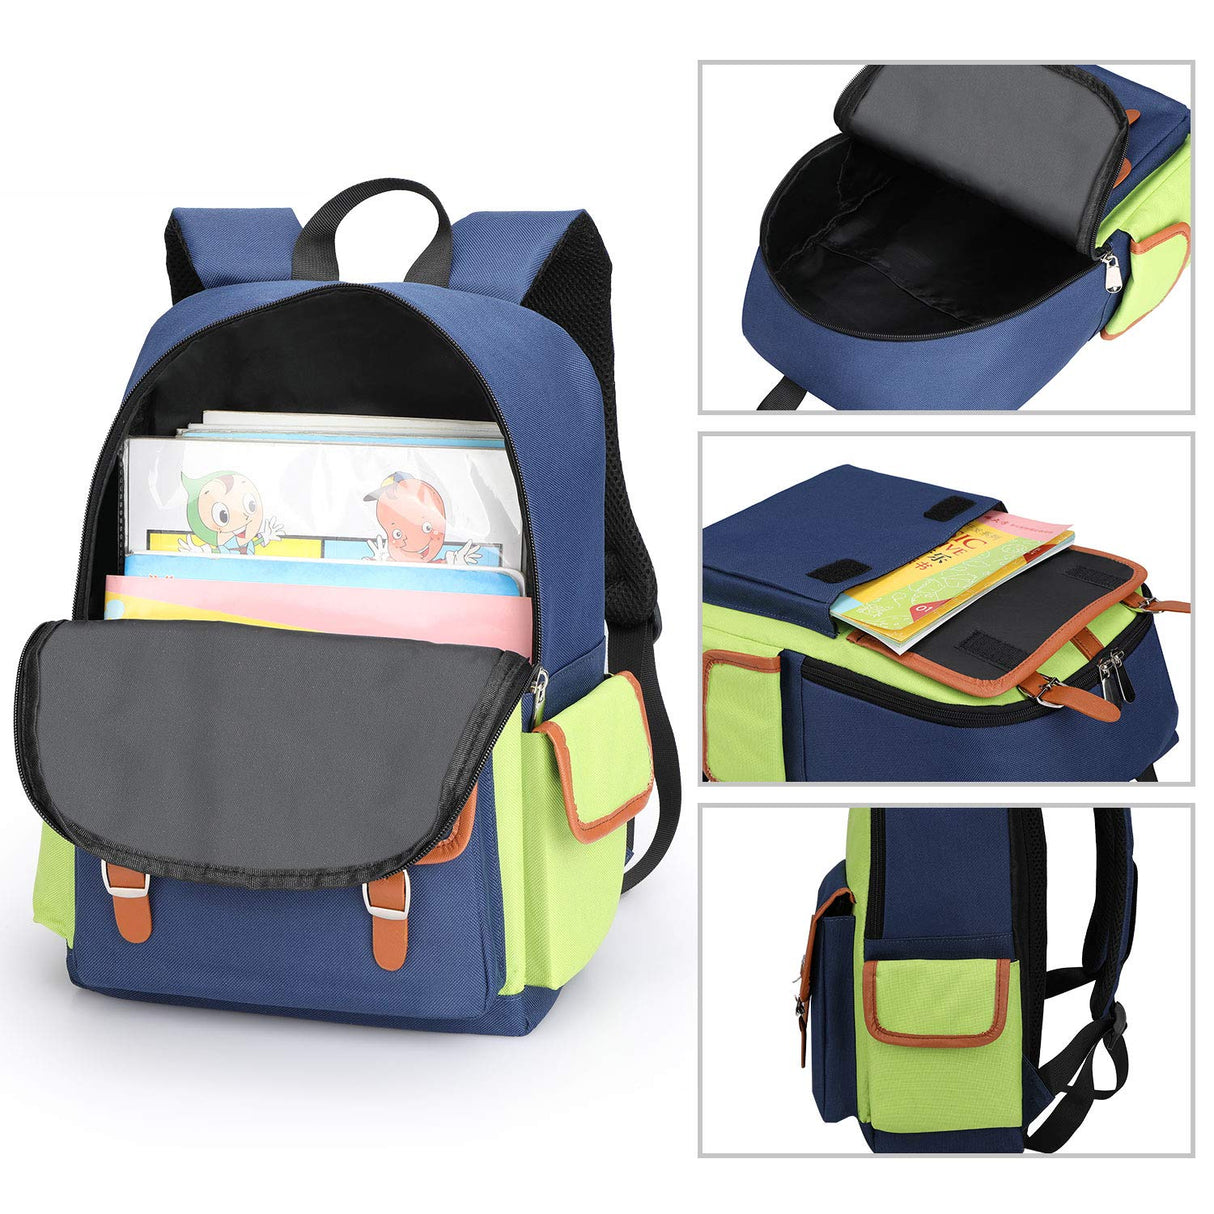 Kids Backpack Children Bookbag Preschool Kindergarten Elementary School Bag for Girls Boys(16182 Large green)